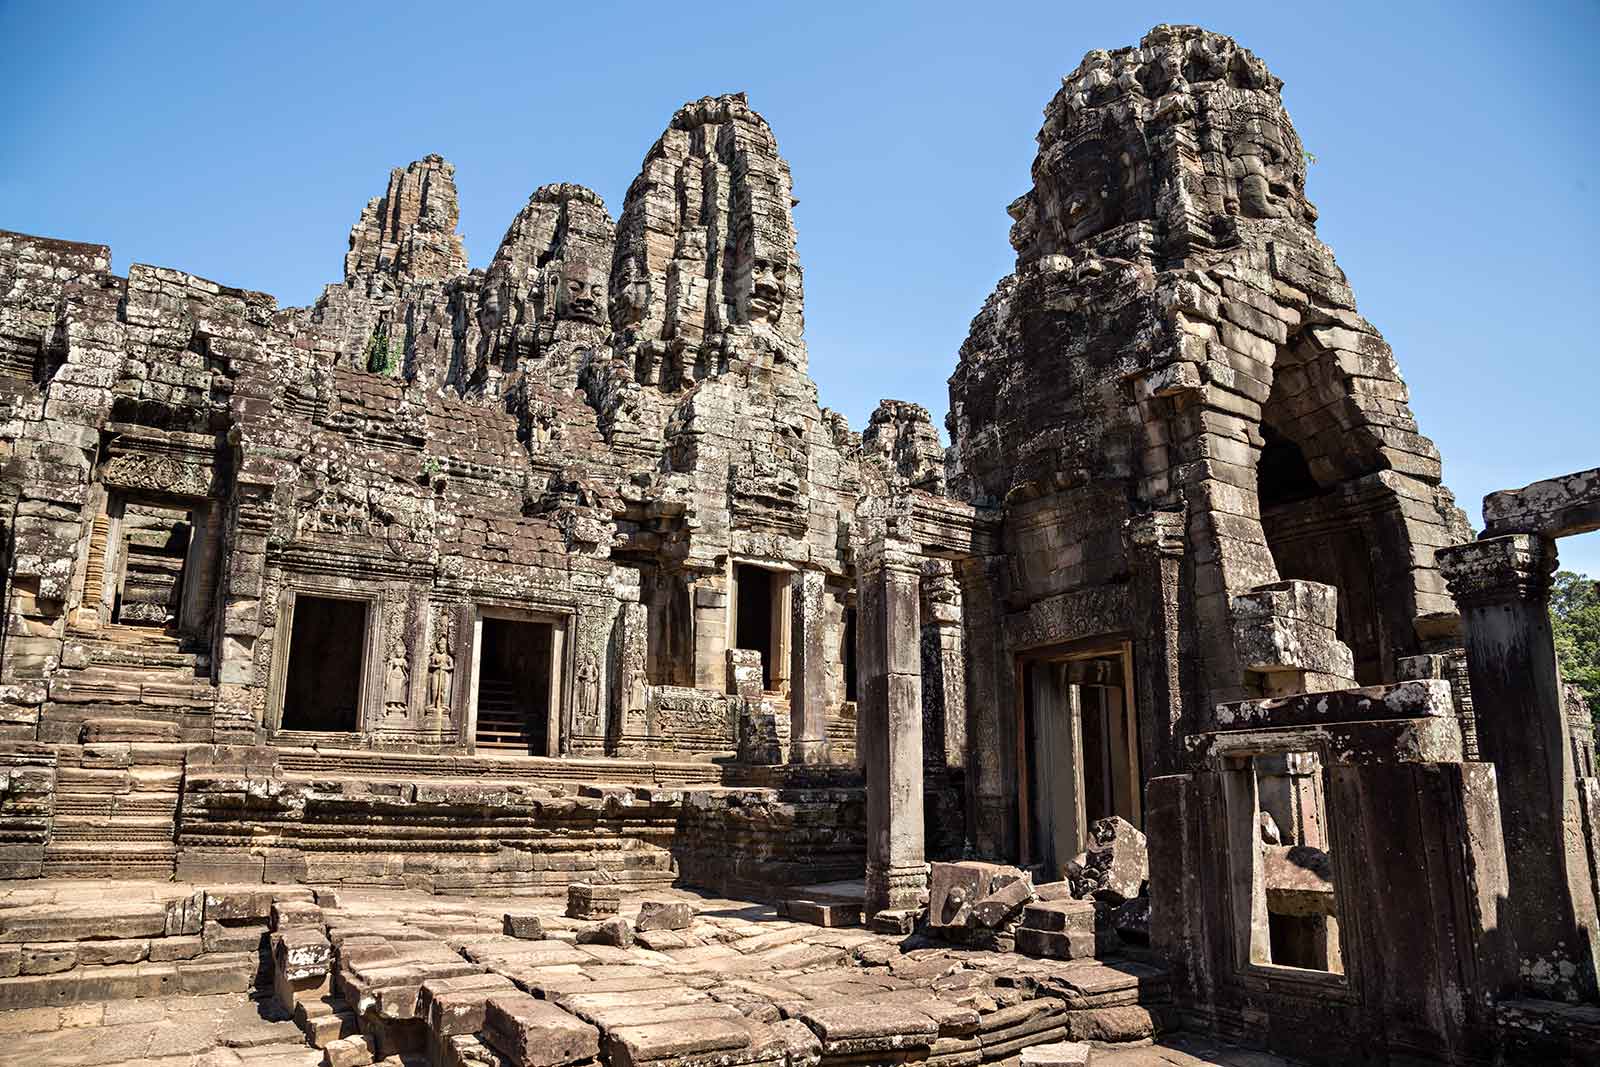 Bayon temple in Angkor Wat, Cambodia.